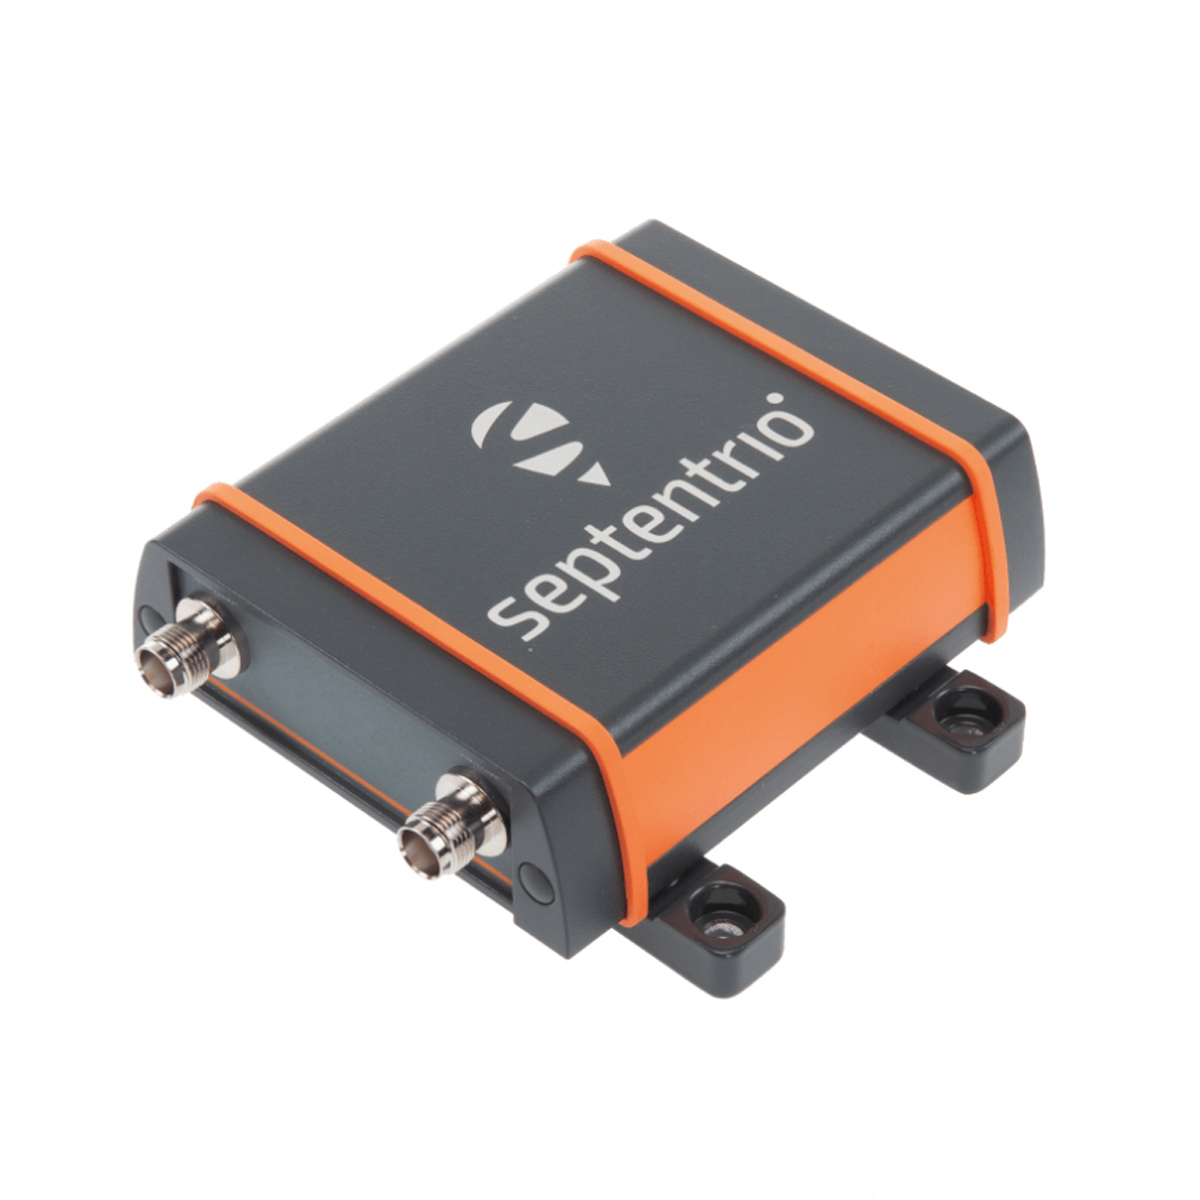 GNSS-Empfänger AsteRx SB3 Pro+ von Septentrio 